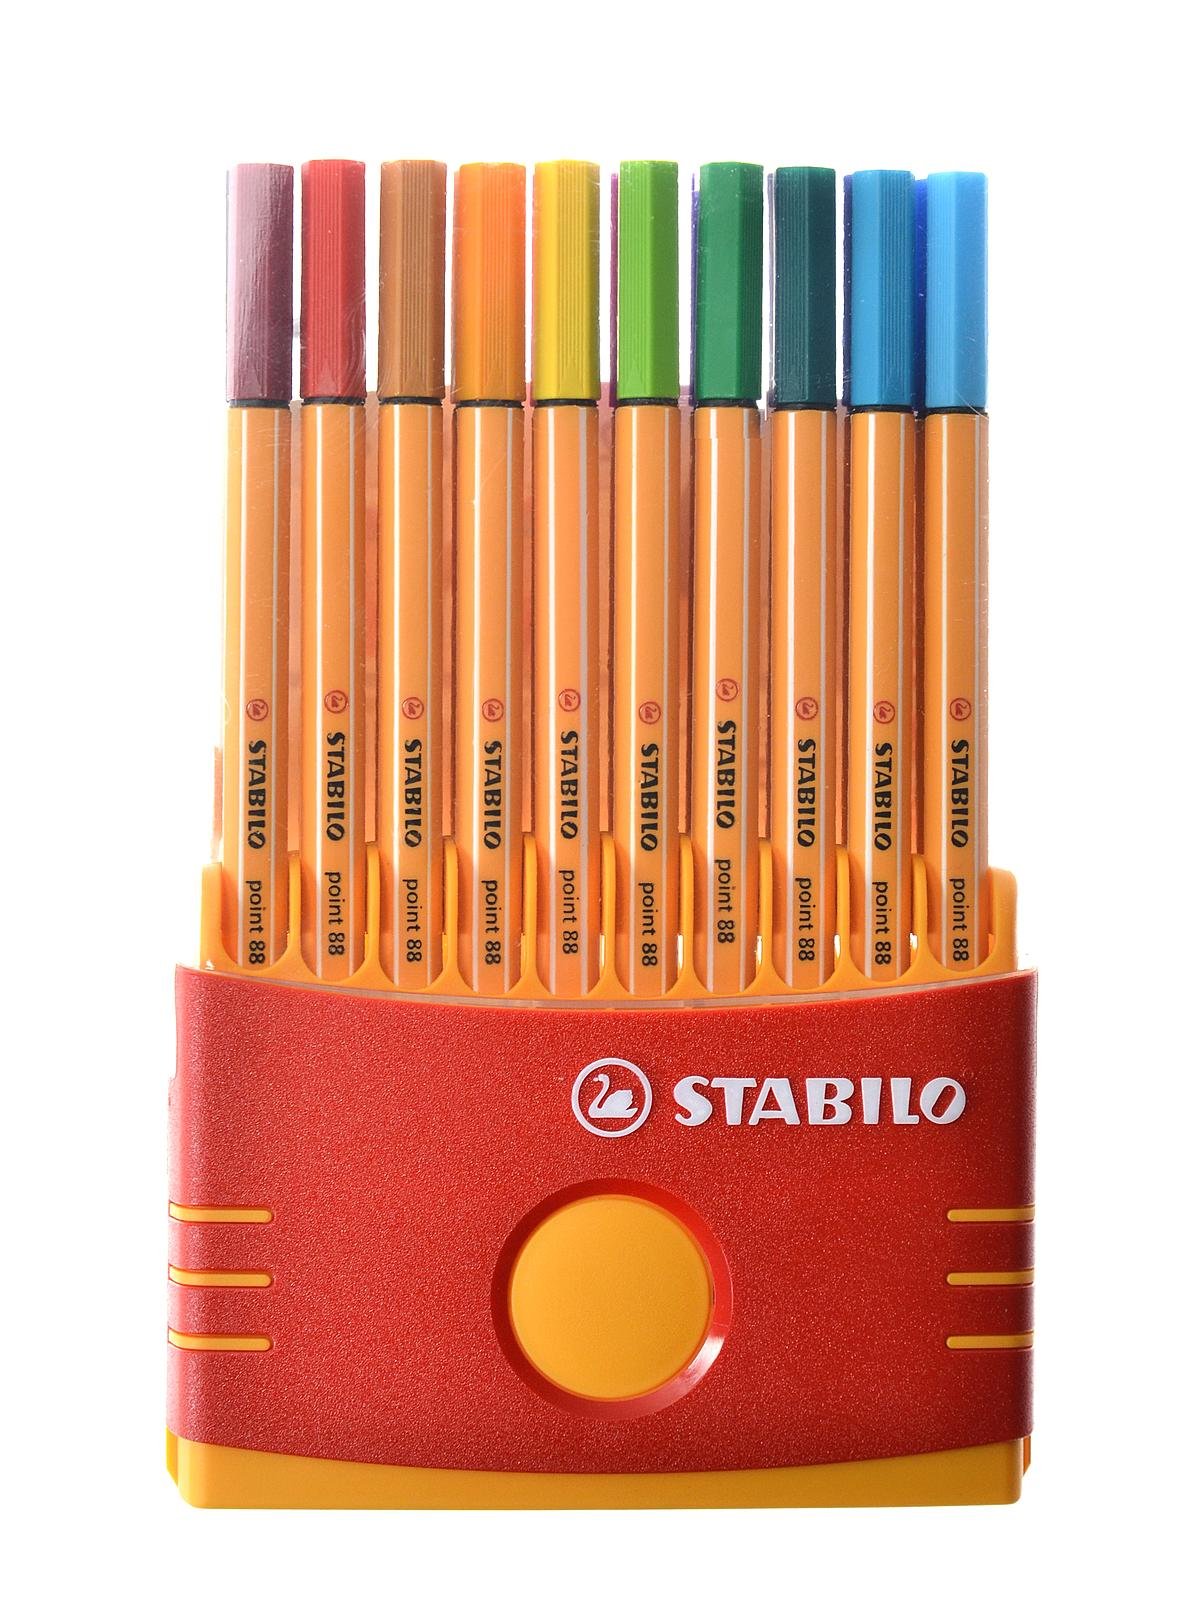 Collega Donker worden lichten Stabilo Point 88 Pen Sets | MisterArt.com